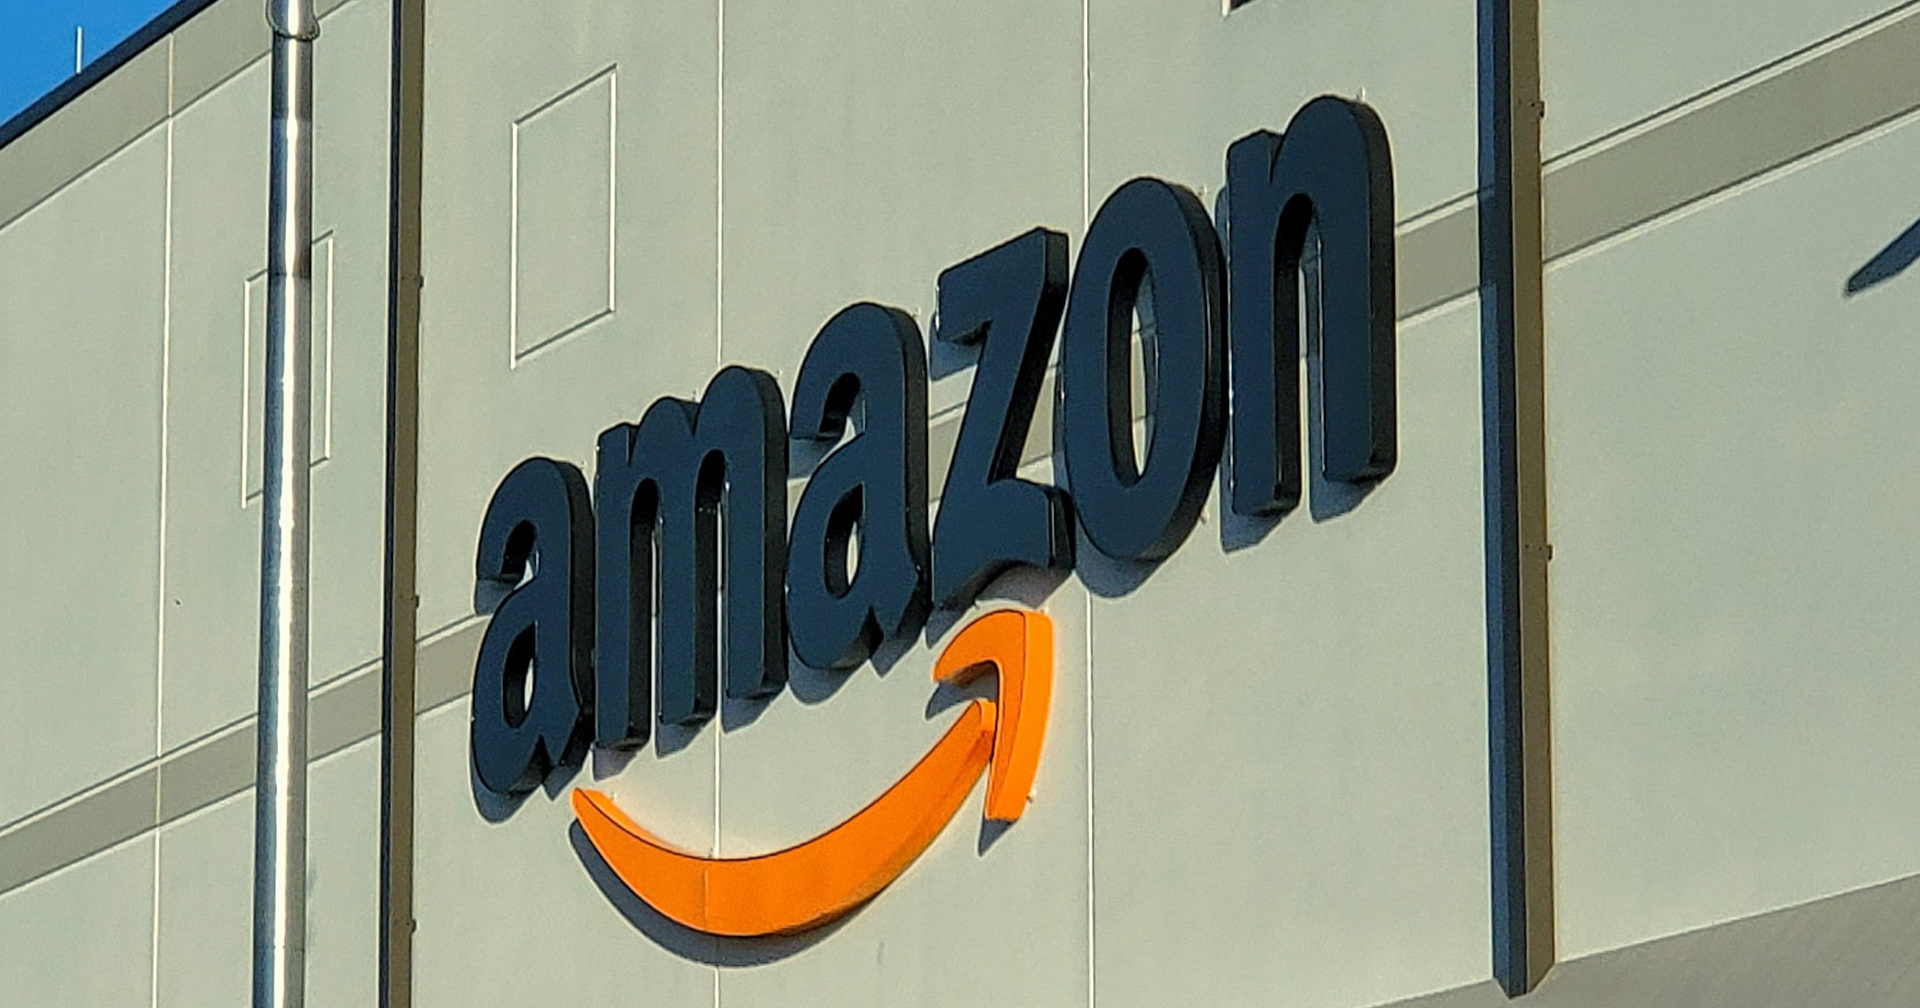 CEO ของ Amazon ไม่บังคับให้พนักงานเข้าออฟฟิศ แม้หลายบริษัทจะเริ่มกลับมาเป็นปกติแล้วก็ตาม